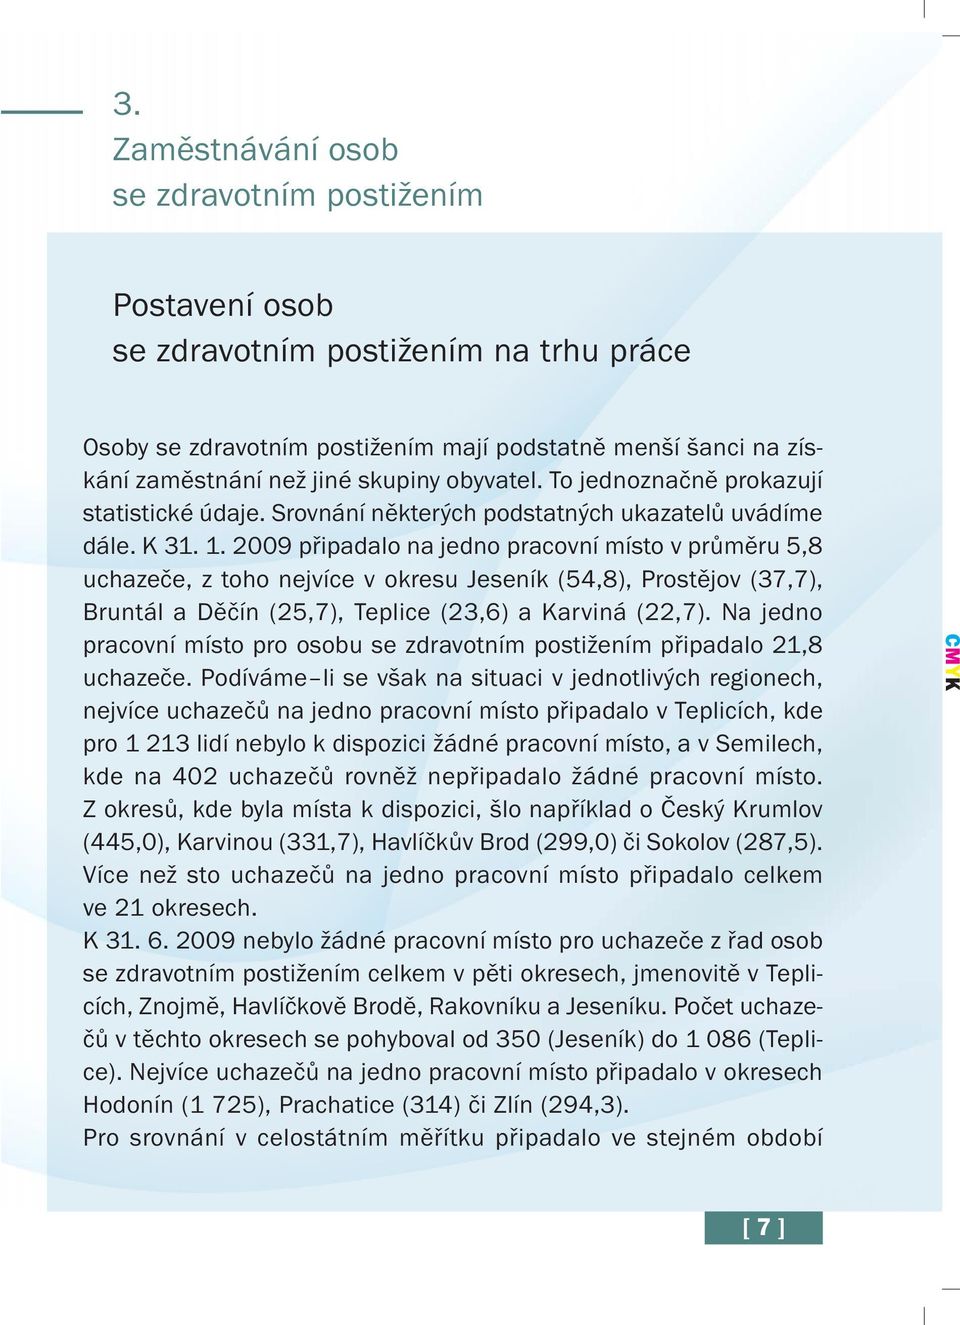 2009 připadalo na jedno pracovní místo v průměru 5,8 uchazeče, z toho nejvíce v okresu Jeseník (54,8), Prostějov (37,7), Bruntál a Děčín (25,7), Teplice (23,6) a Karviná (22,7).